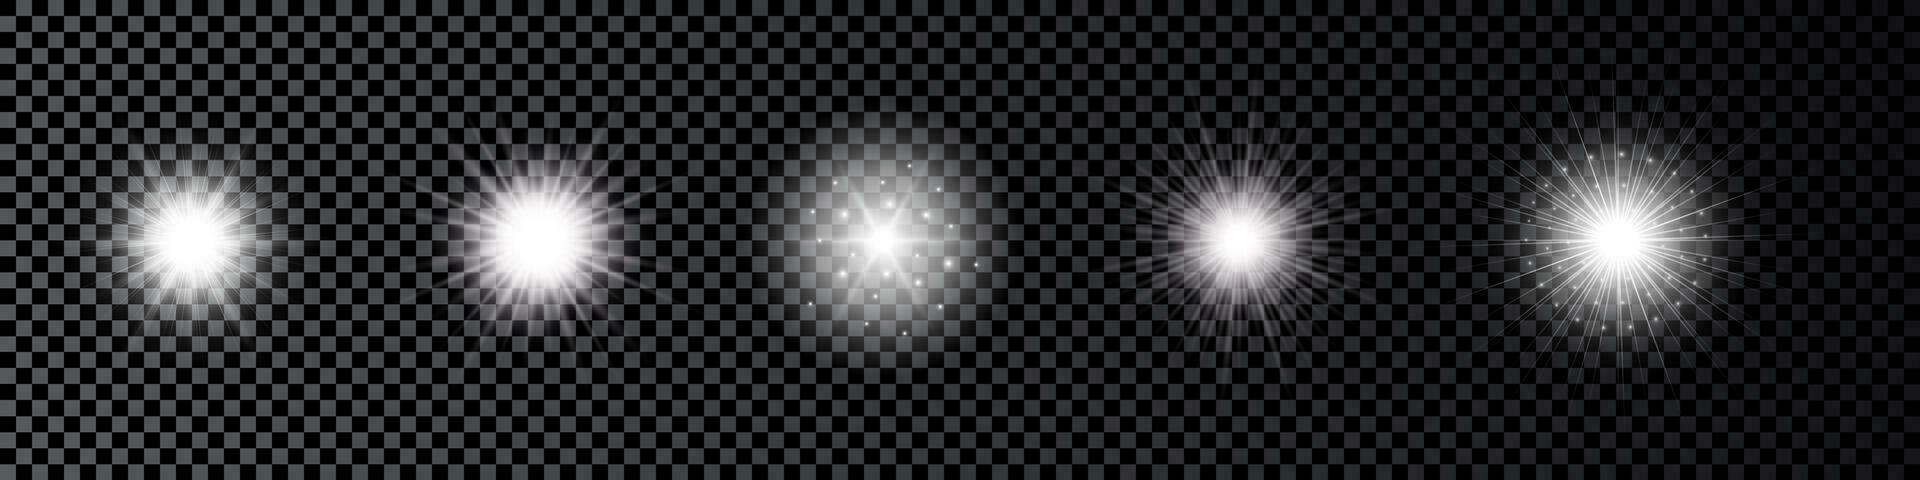 luz efeito do lente chamas. conjunto do cinco branco brilhando luzes starburst efeitos com brilhos em uma Sombrio vetor